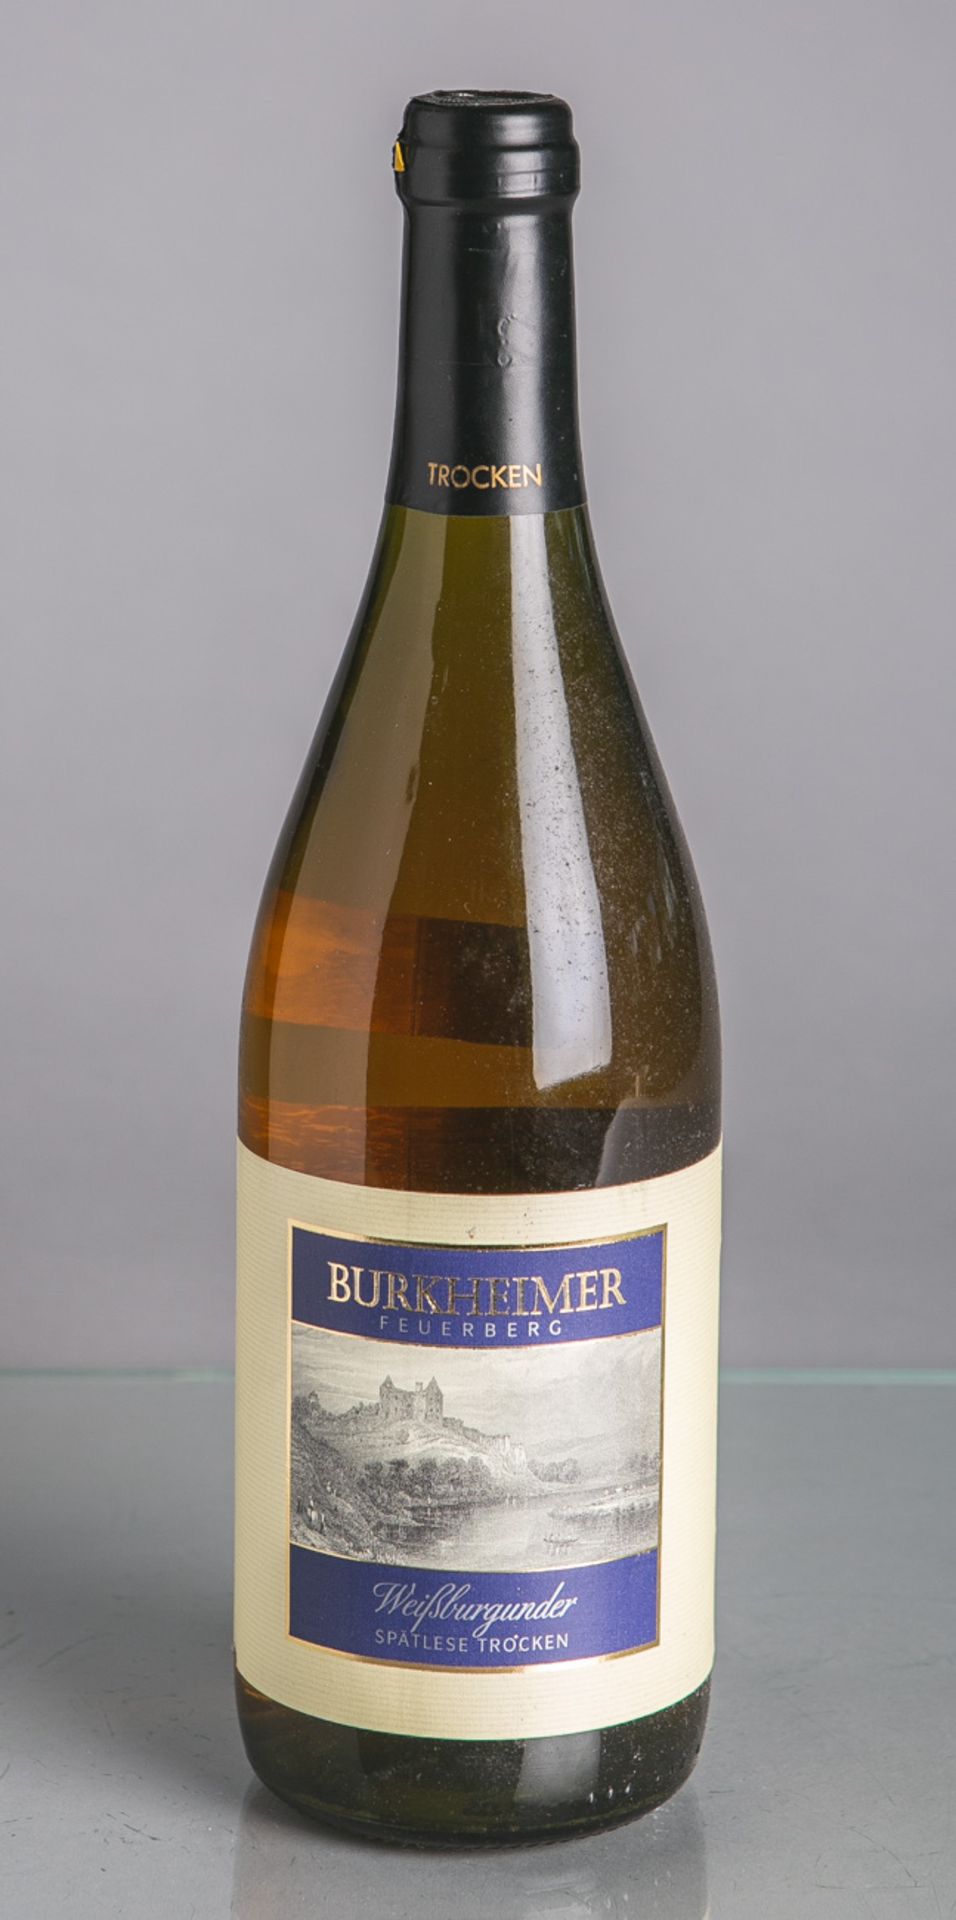 13 Flaschen von Burkheimer, Feuerberg (2001)